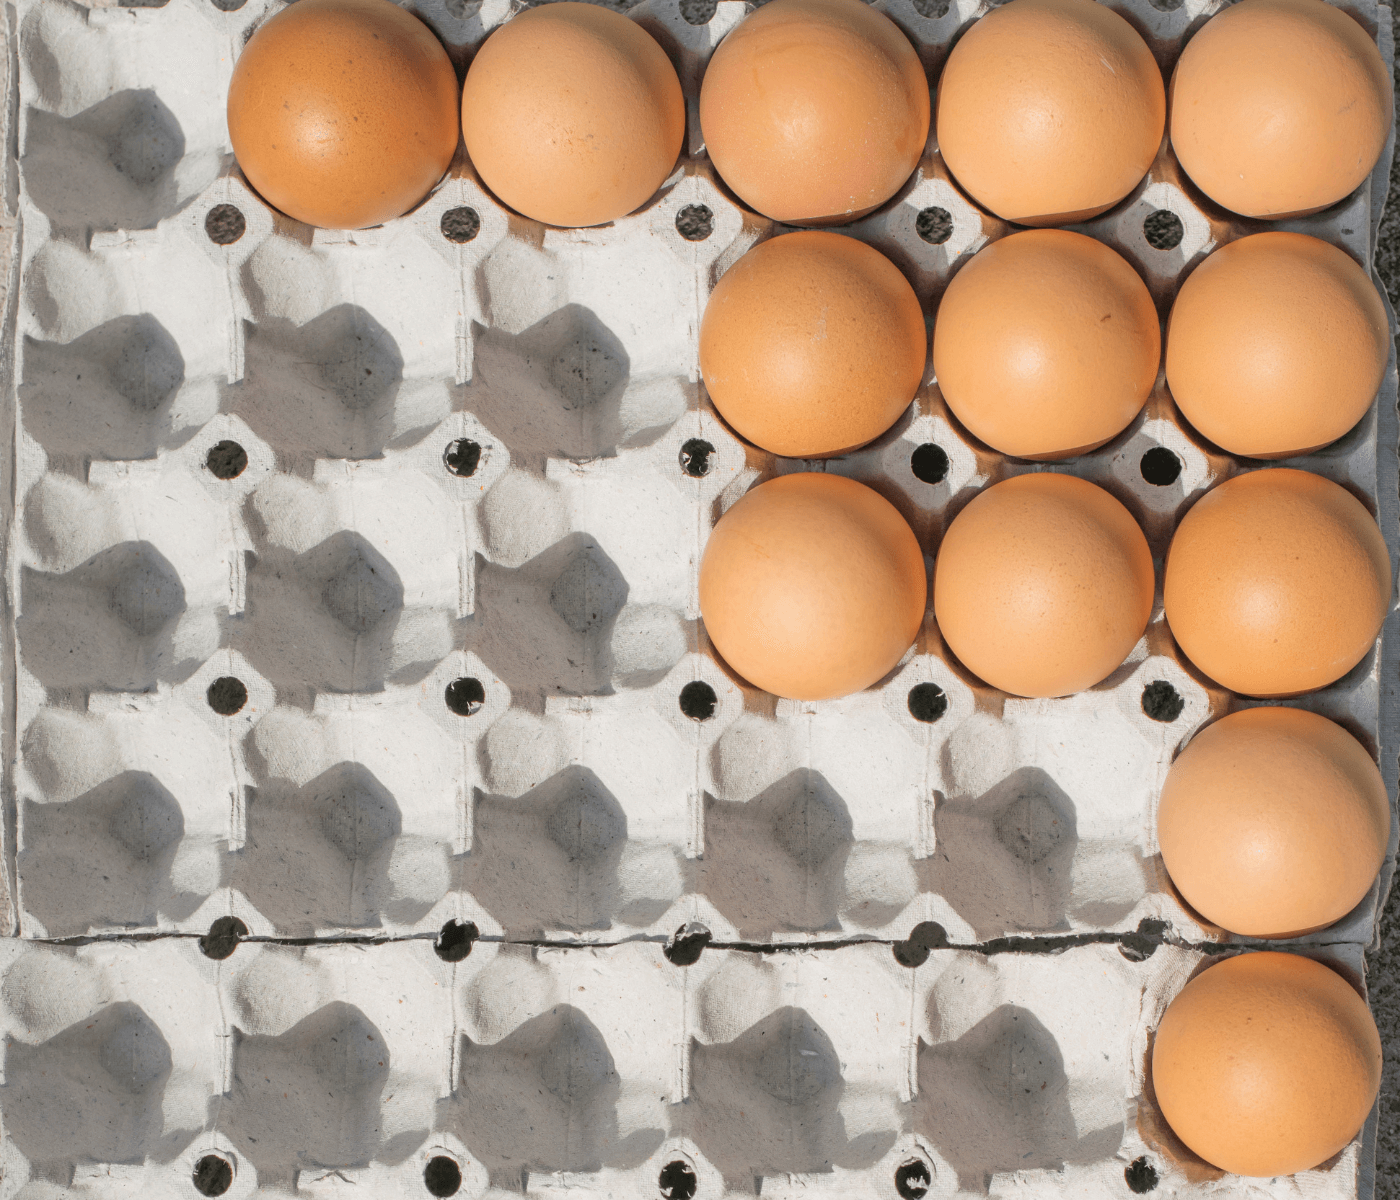 Brasil corre risco de ficar sem ovos?